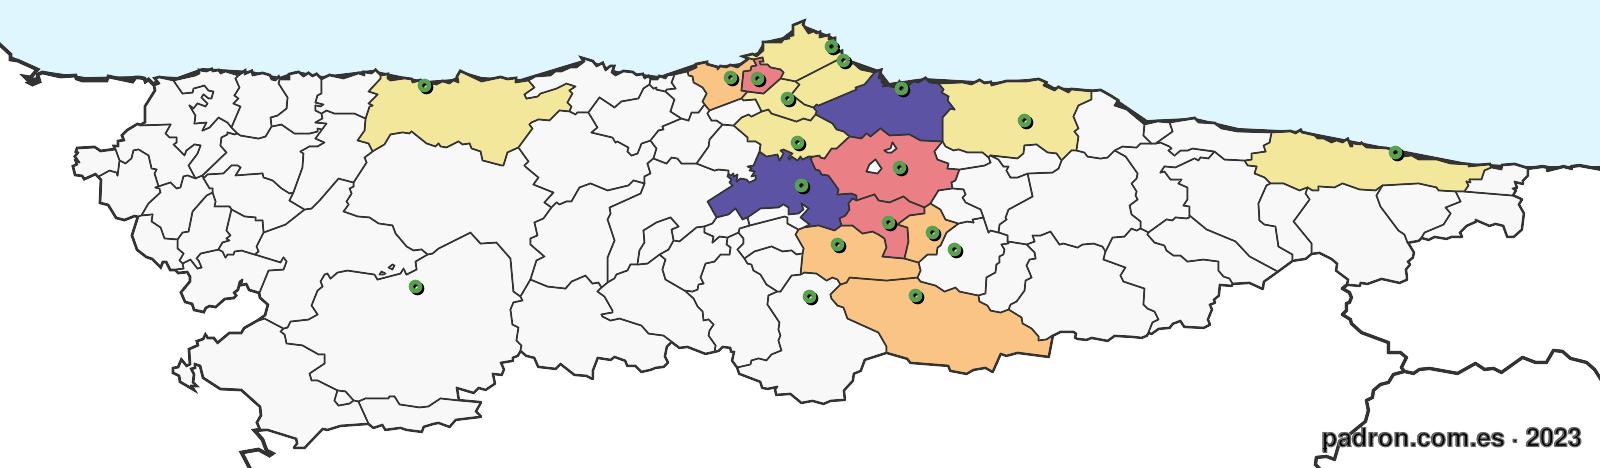 búlgaros en asturias.